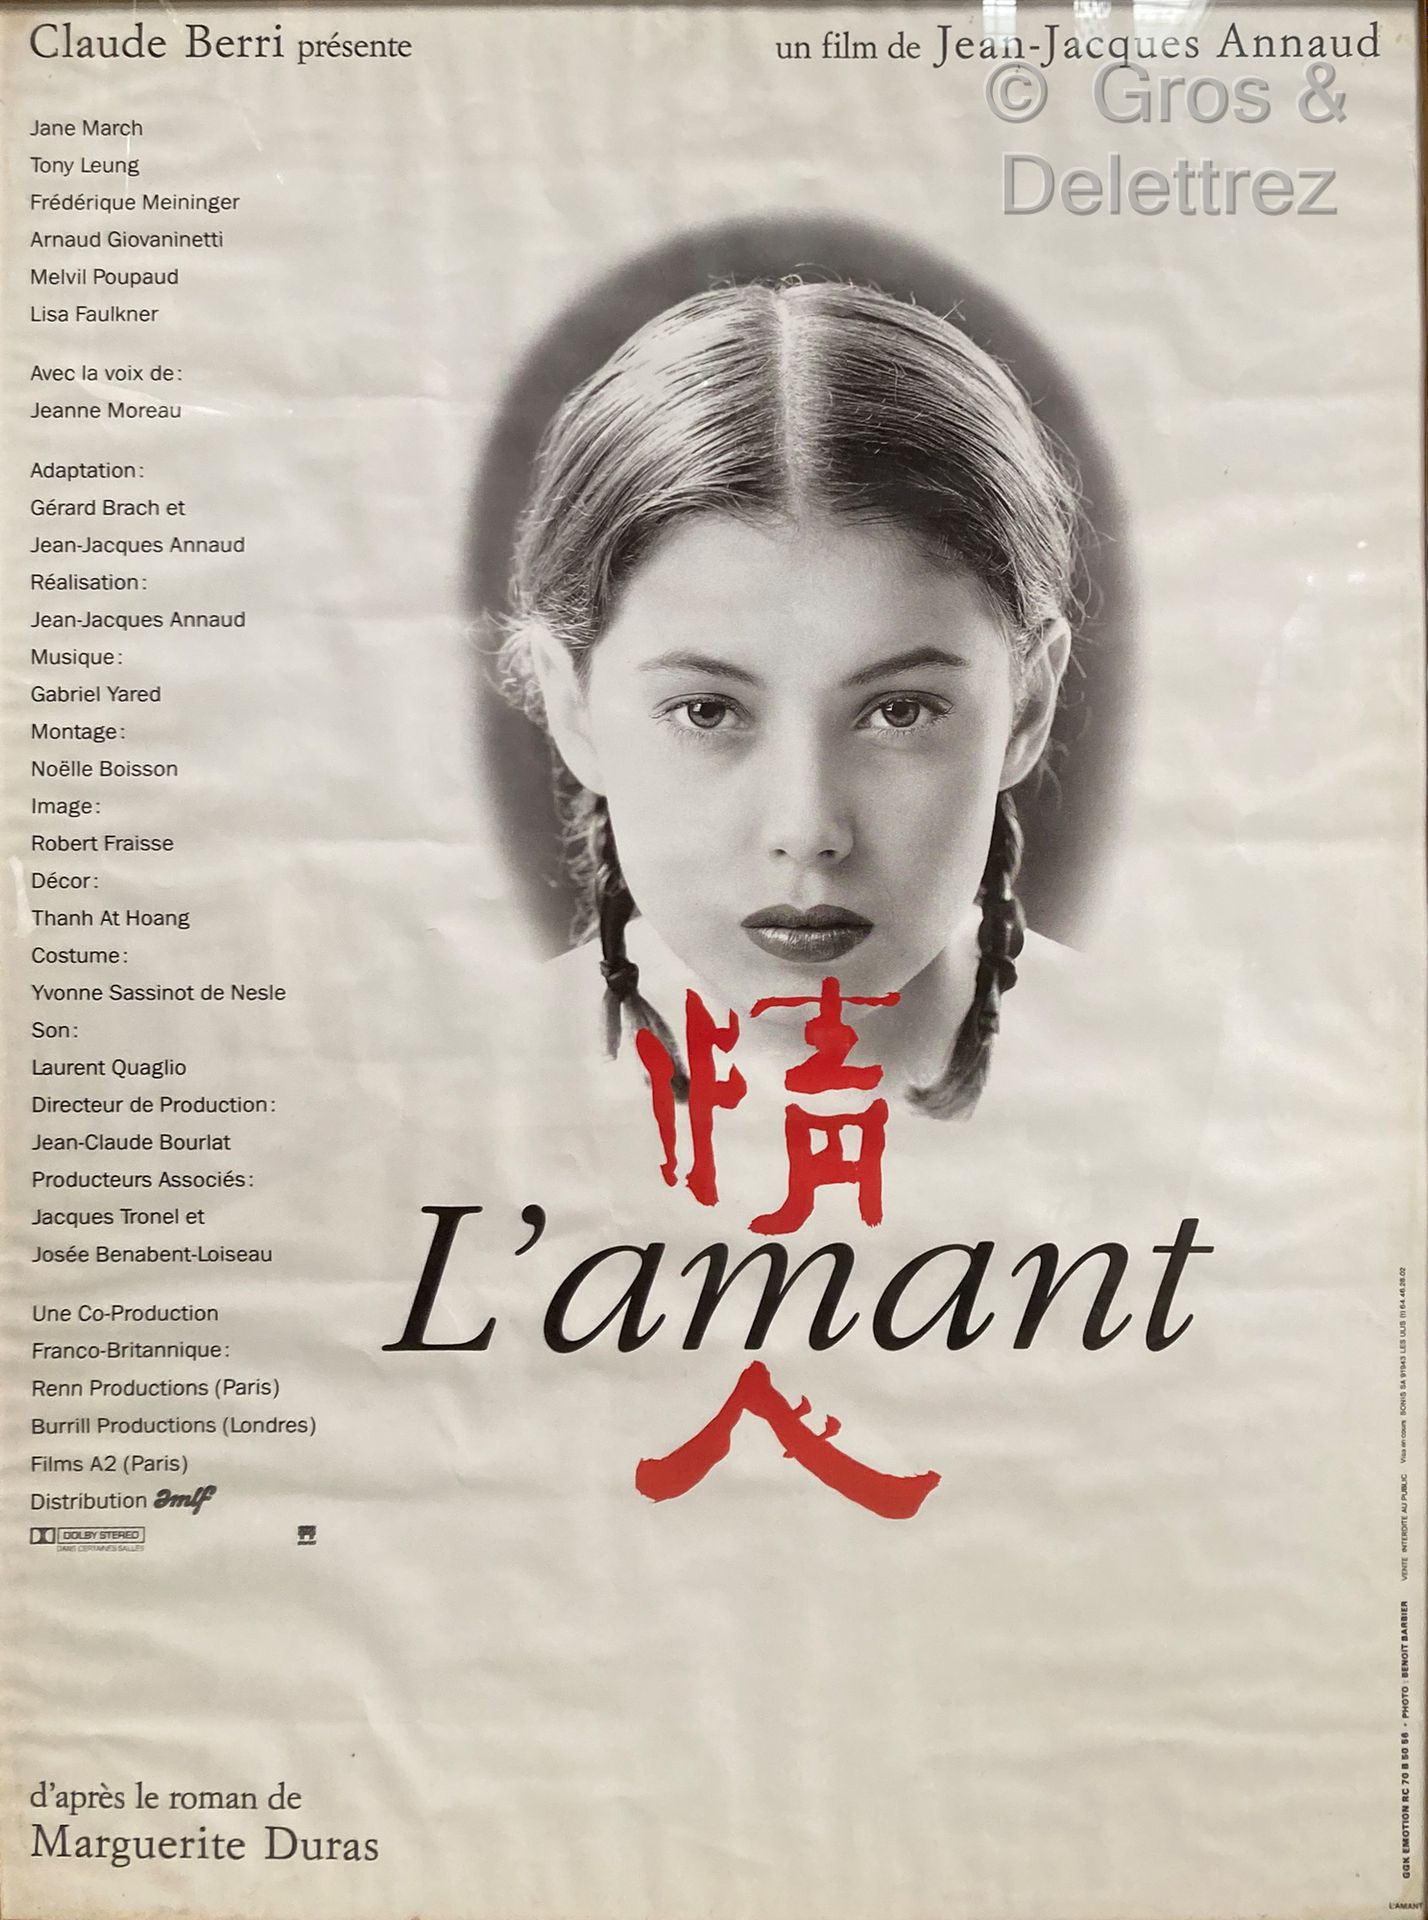 Jean-Jacques ANNAUD L'AMANT

Affiche de cinéma

78 x 57 cm sous verre